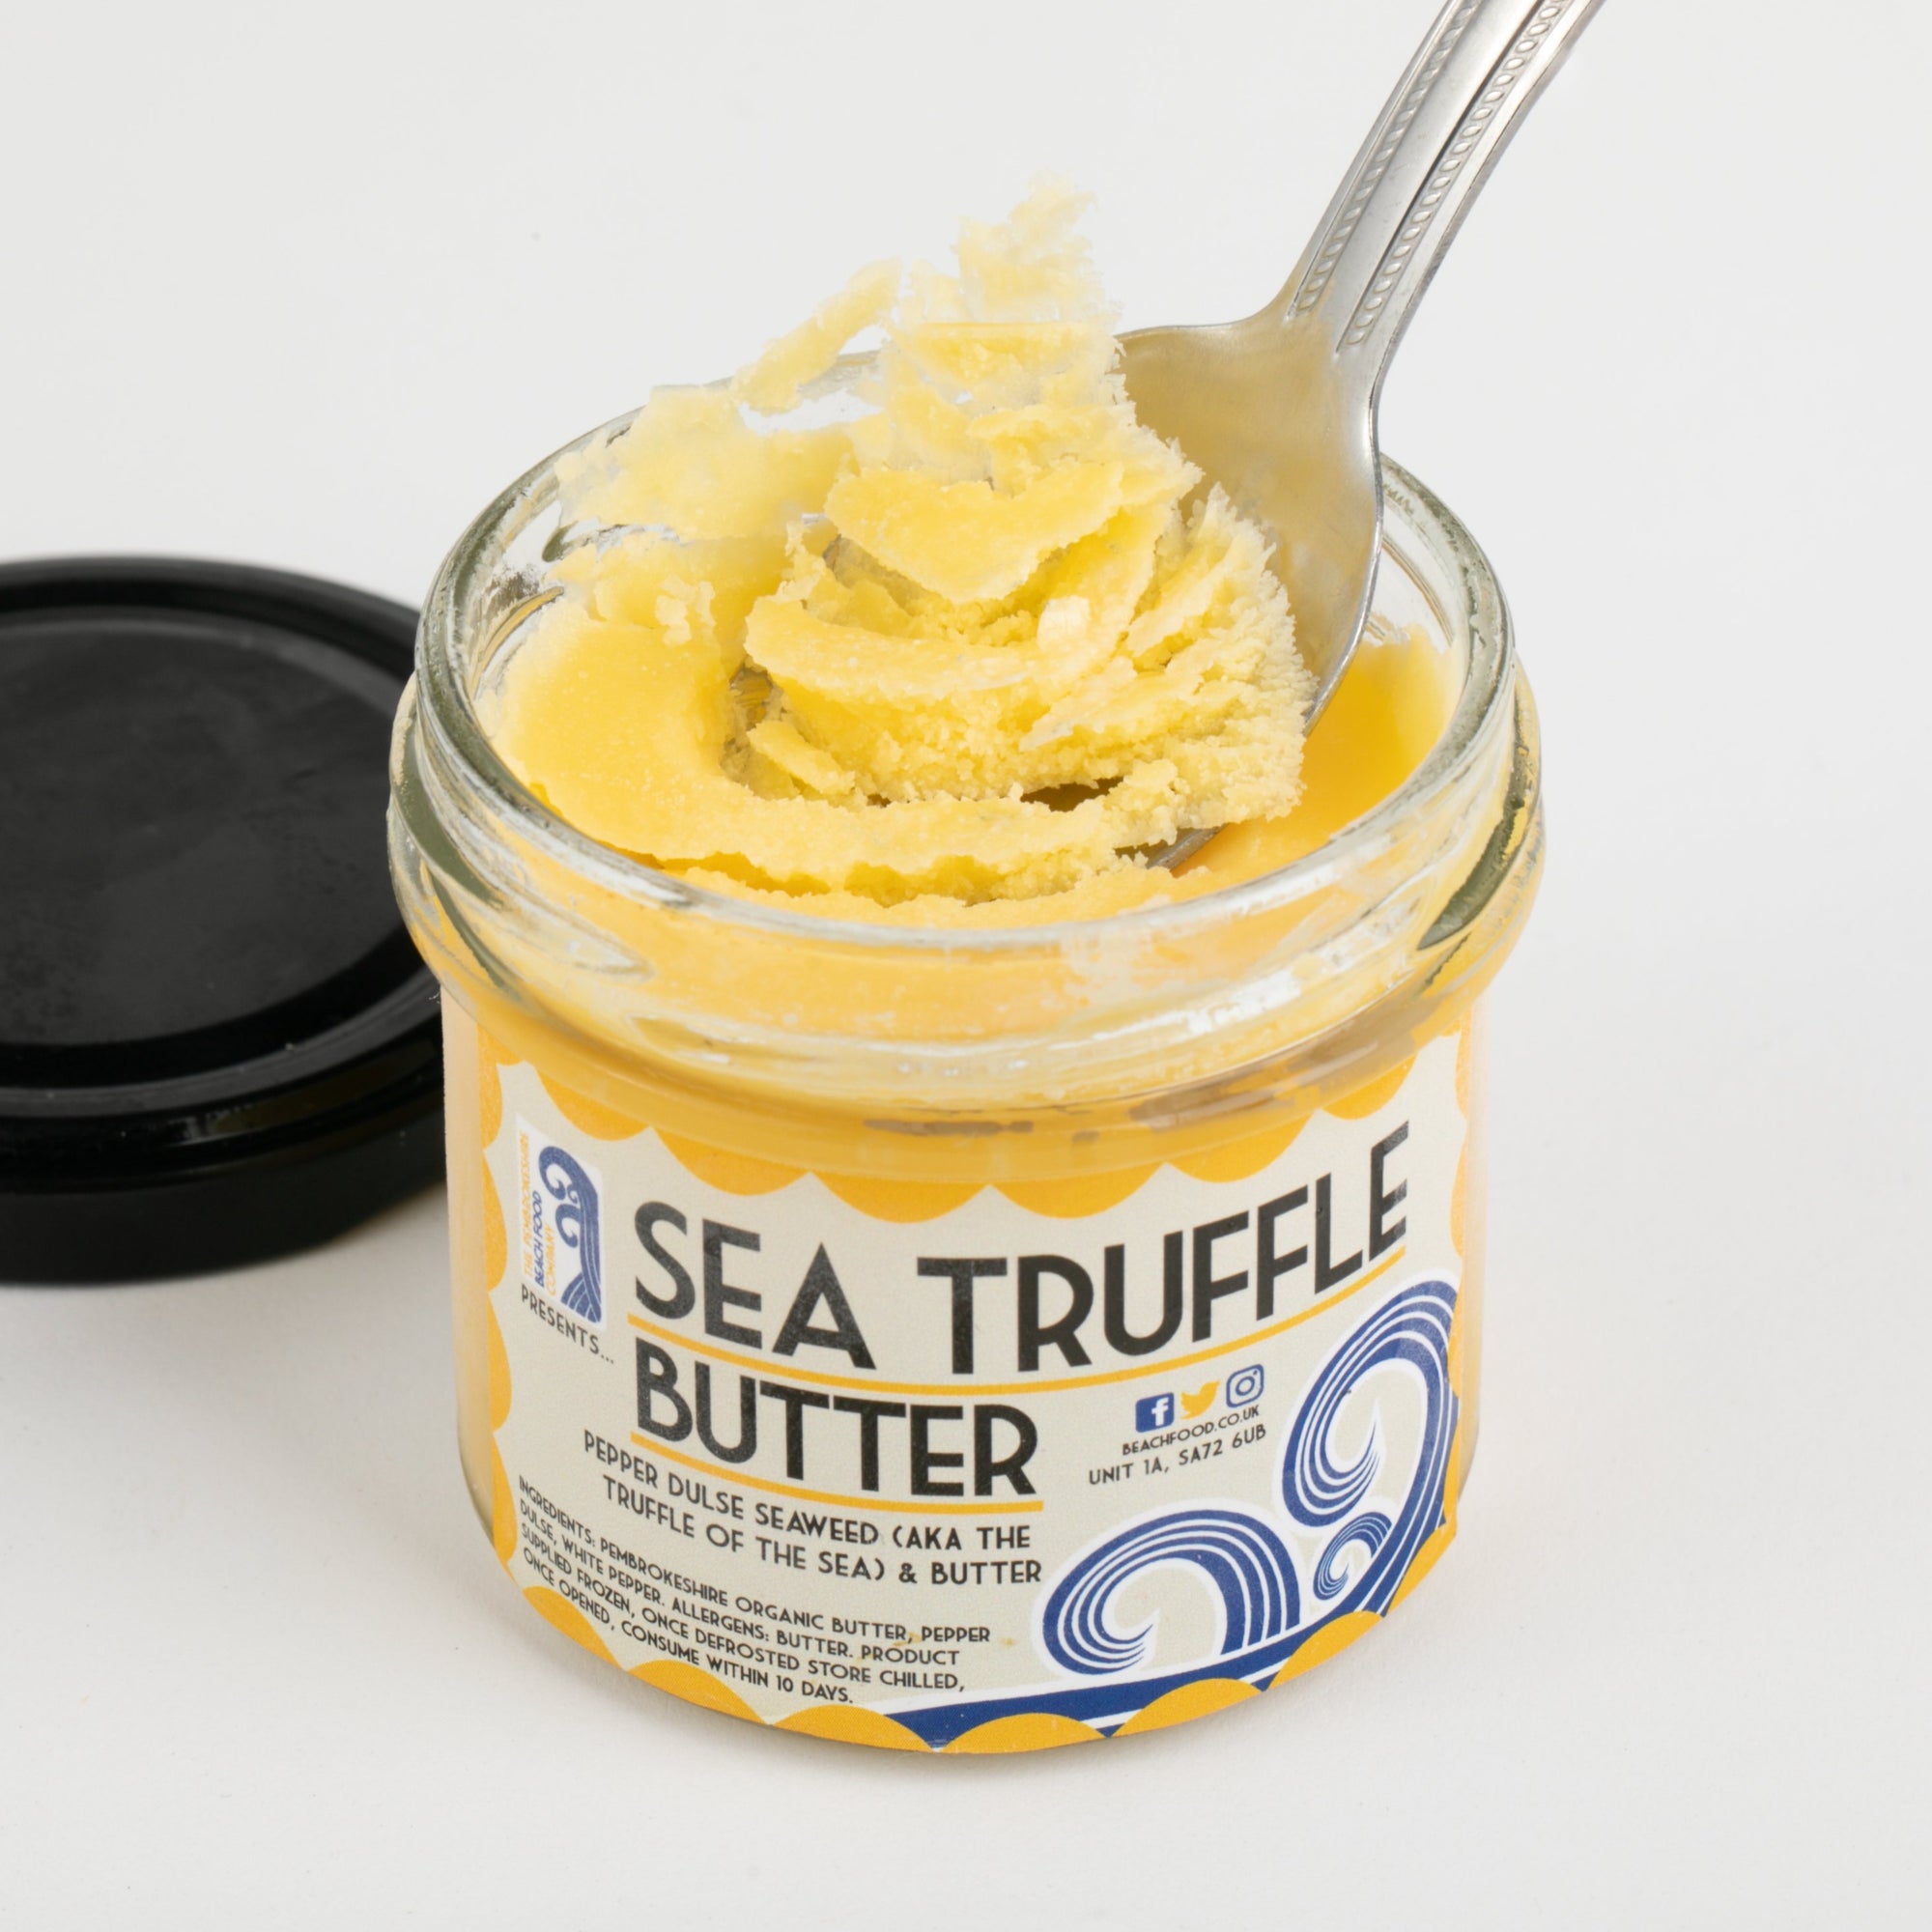 Pepper Dulse Seaweed Butter (Sea Truffle Butter)